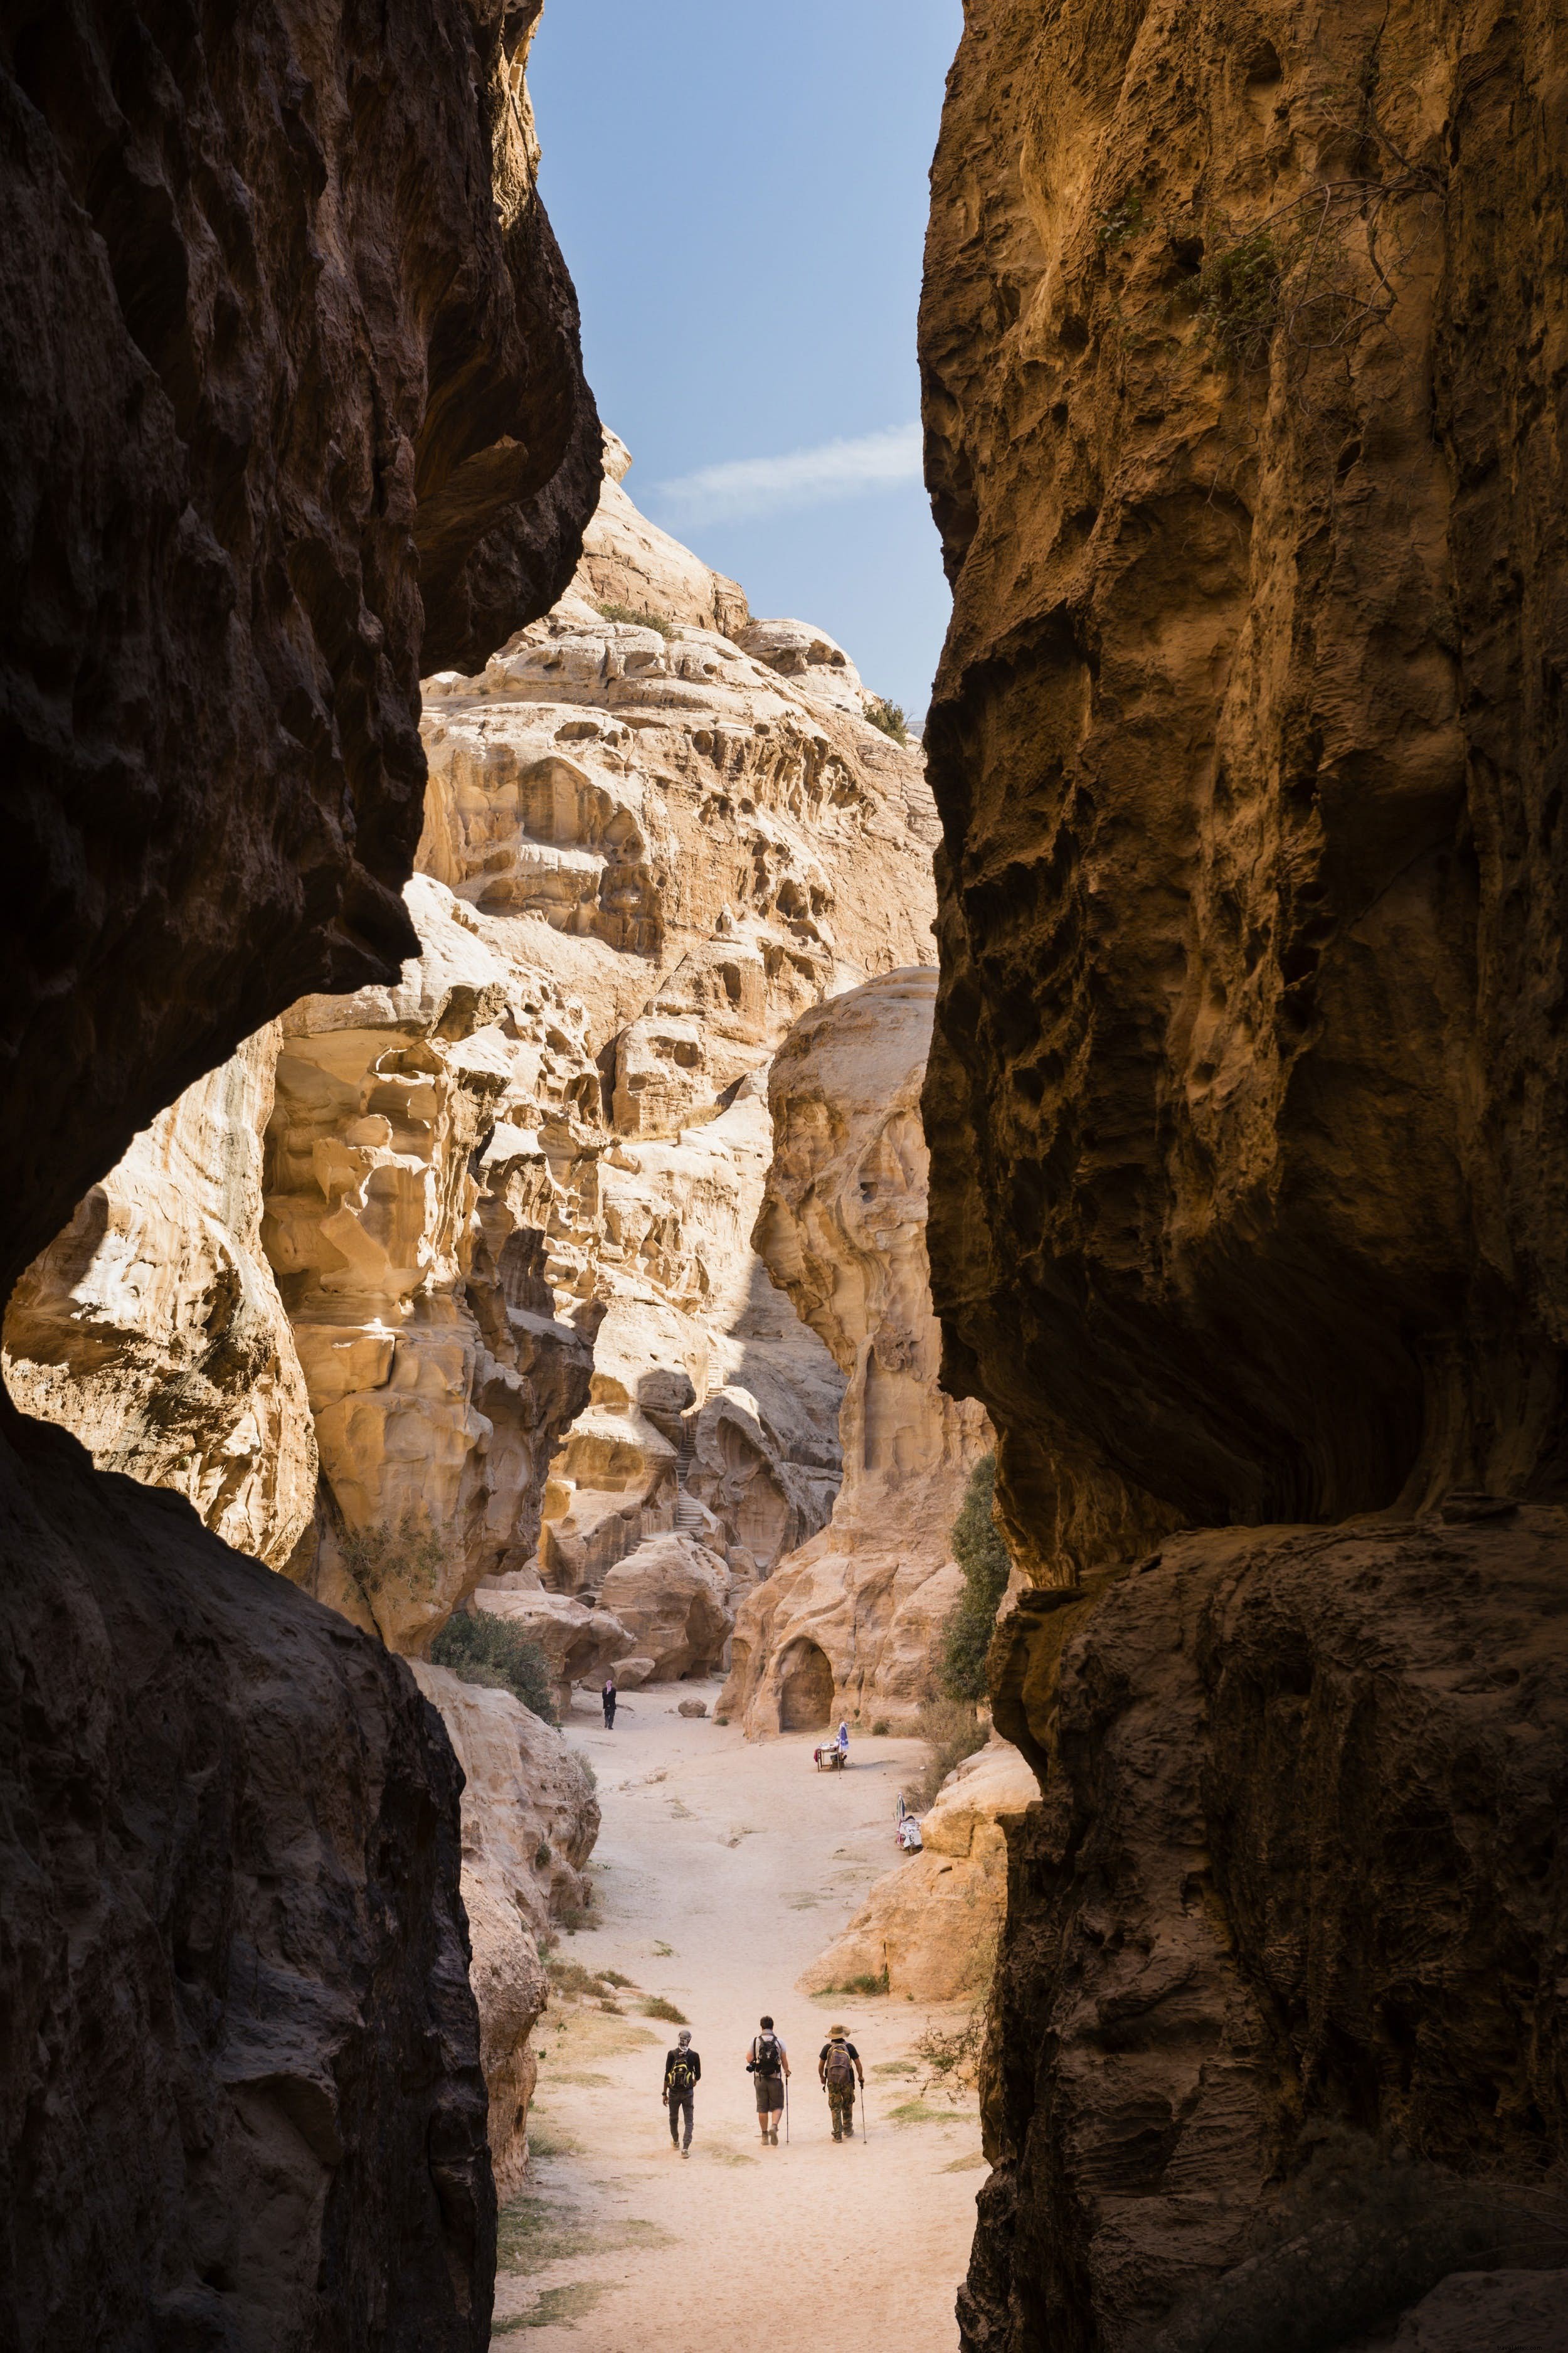 Caminhada, canyoning, escalada e mais:encontrando aventura no Oriente Médio 